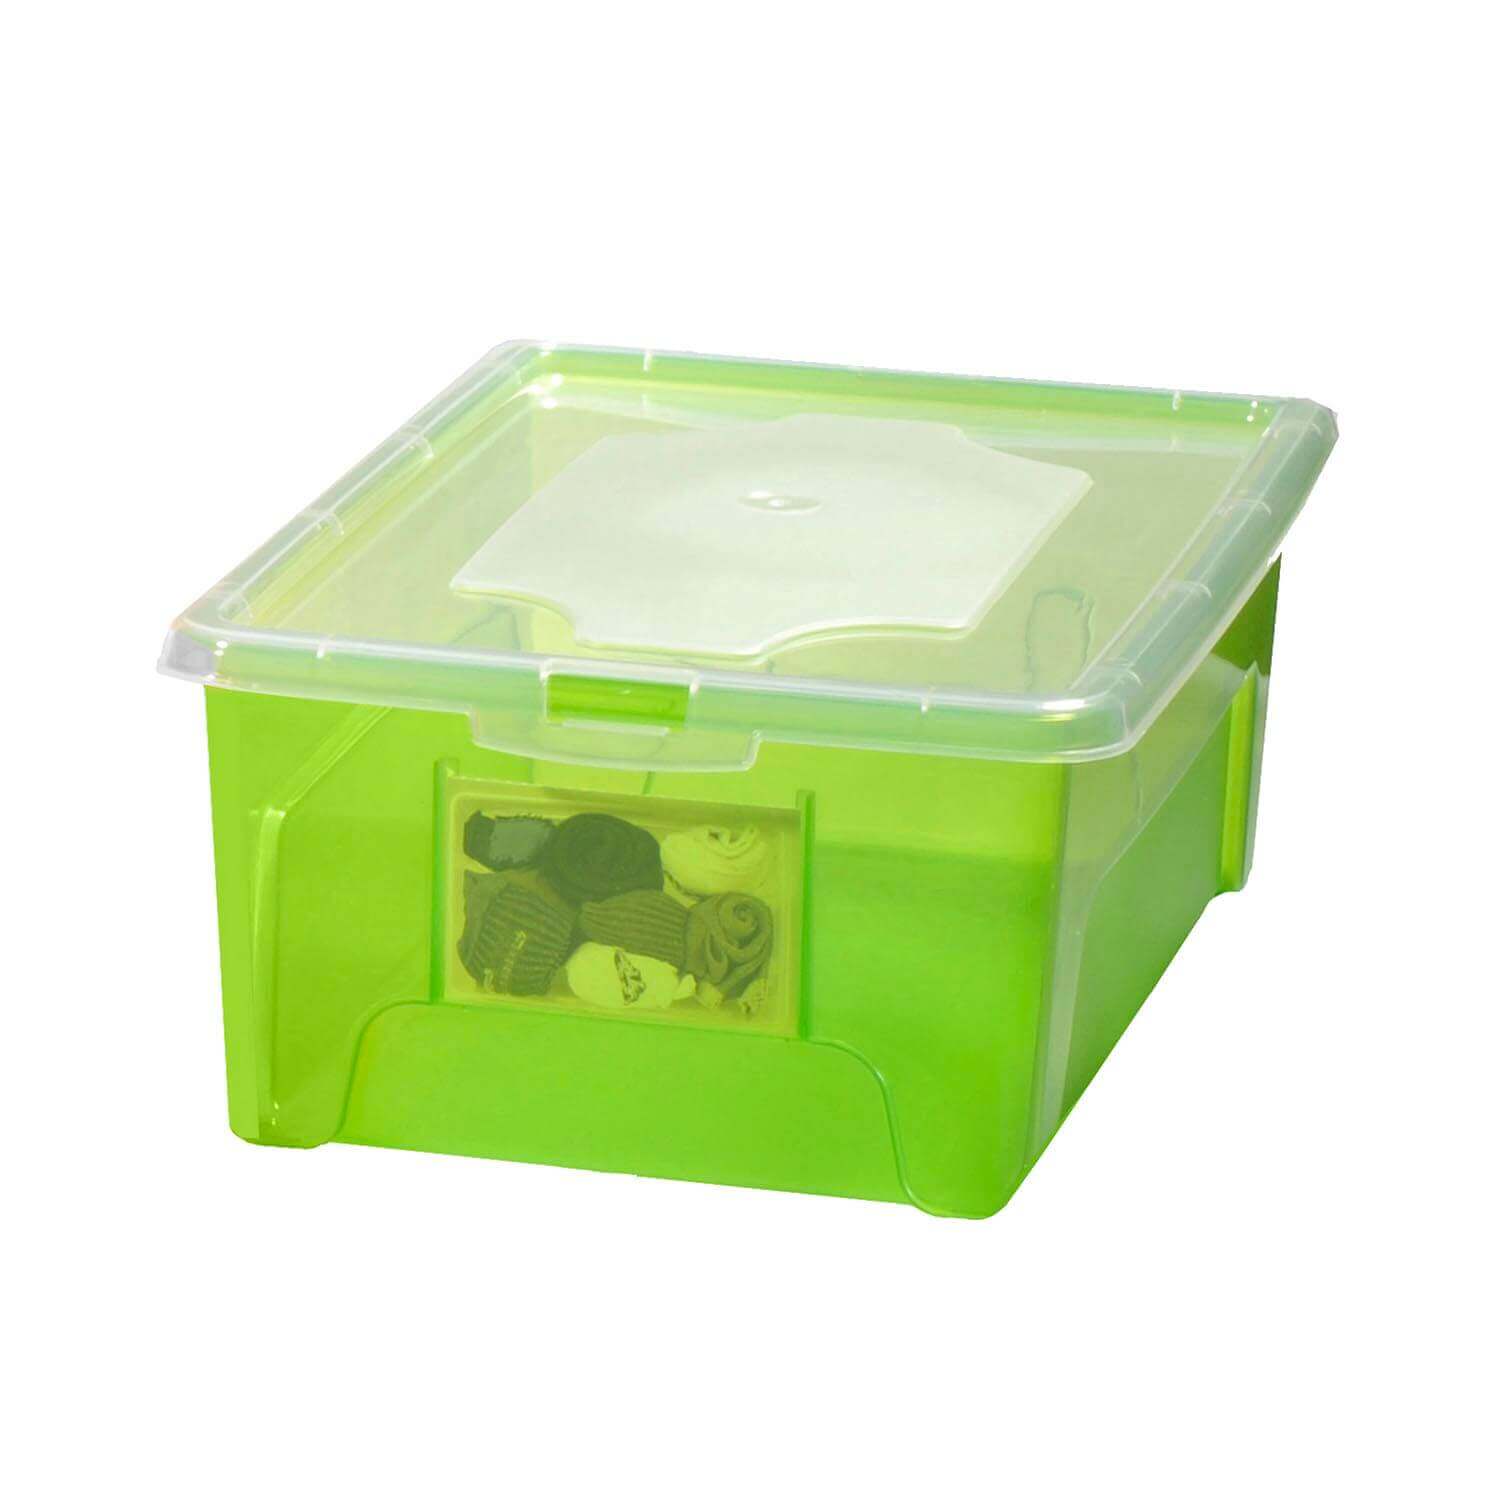 Aufbewahrungsbox "Easybox" 5 L in grün, Kunststoffbox